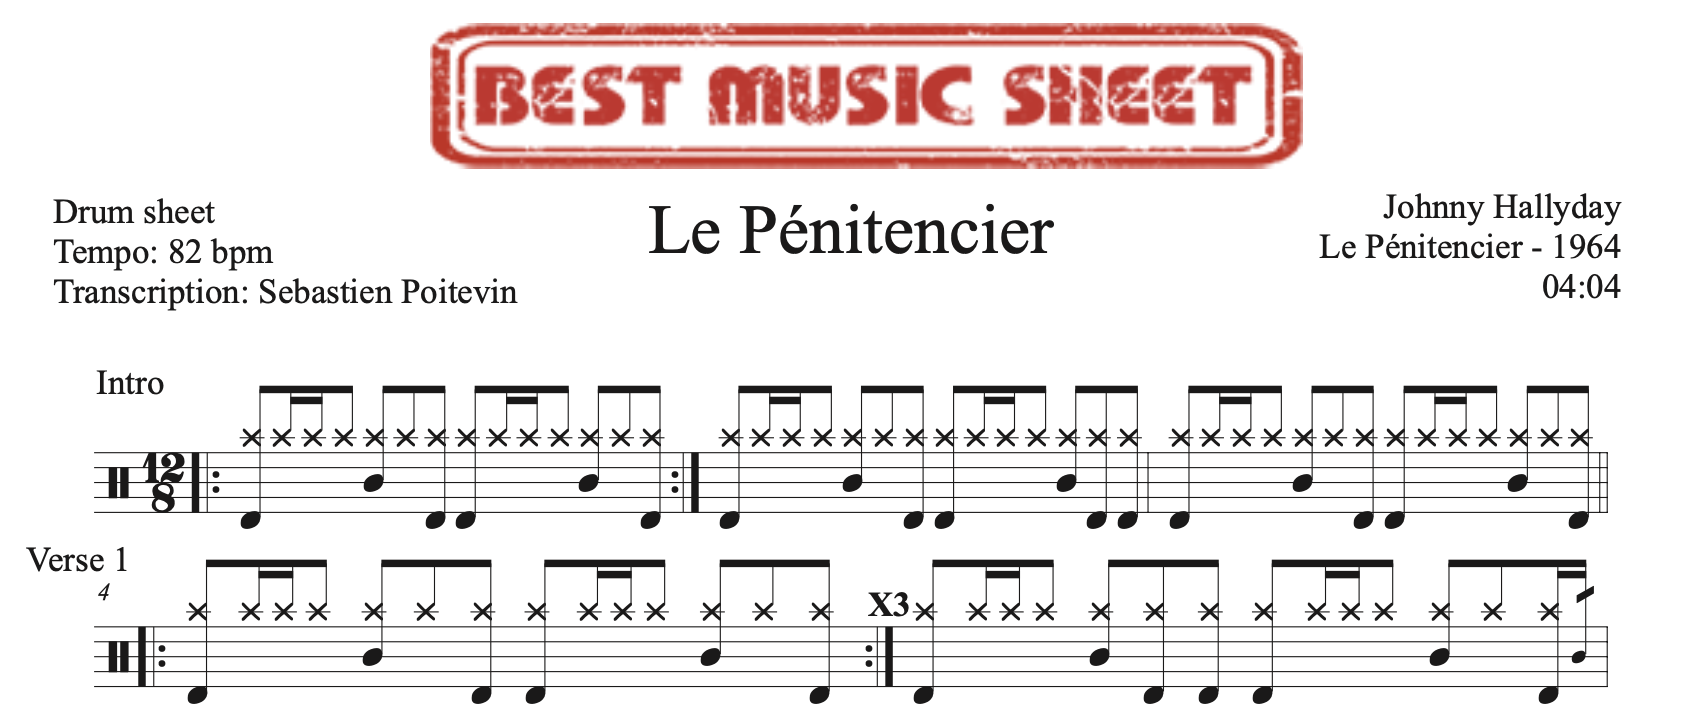 Sample drum sheet of Le Penitencier by Johnny Hallyday